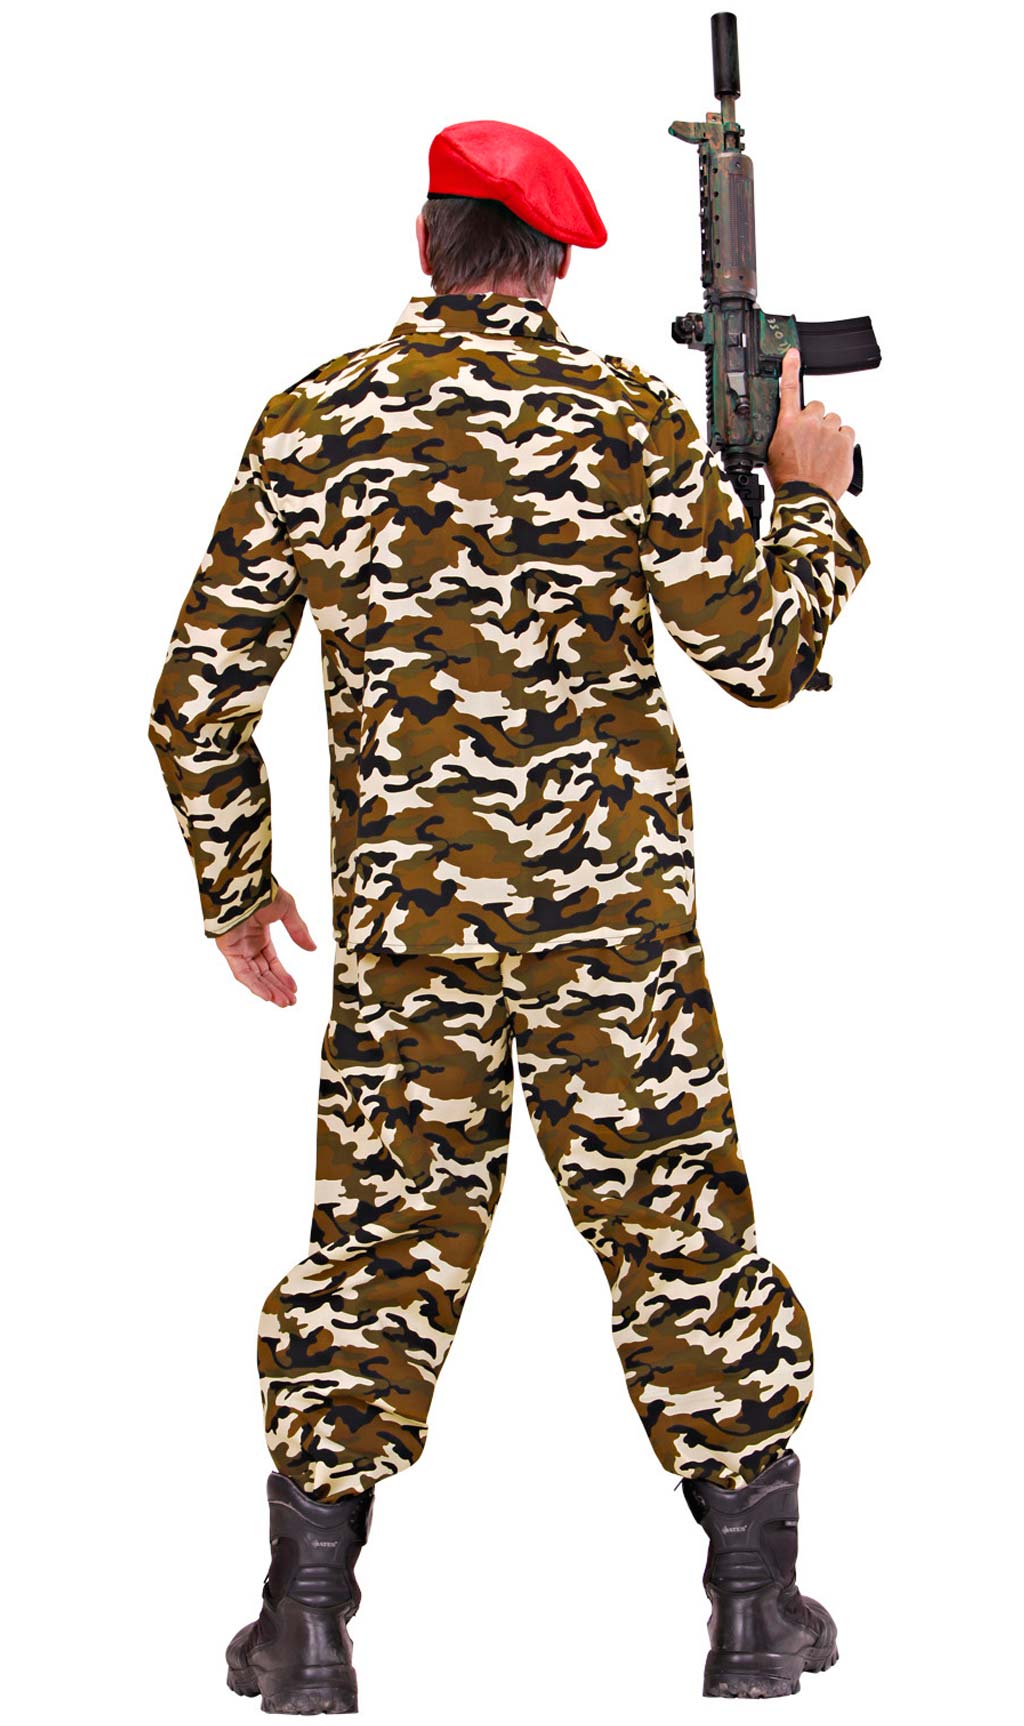 Las mejores ofertas en Disfraces Talla 6 militar para niños